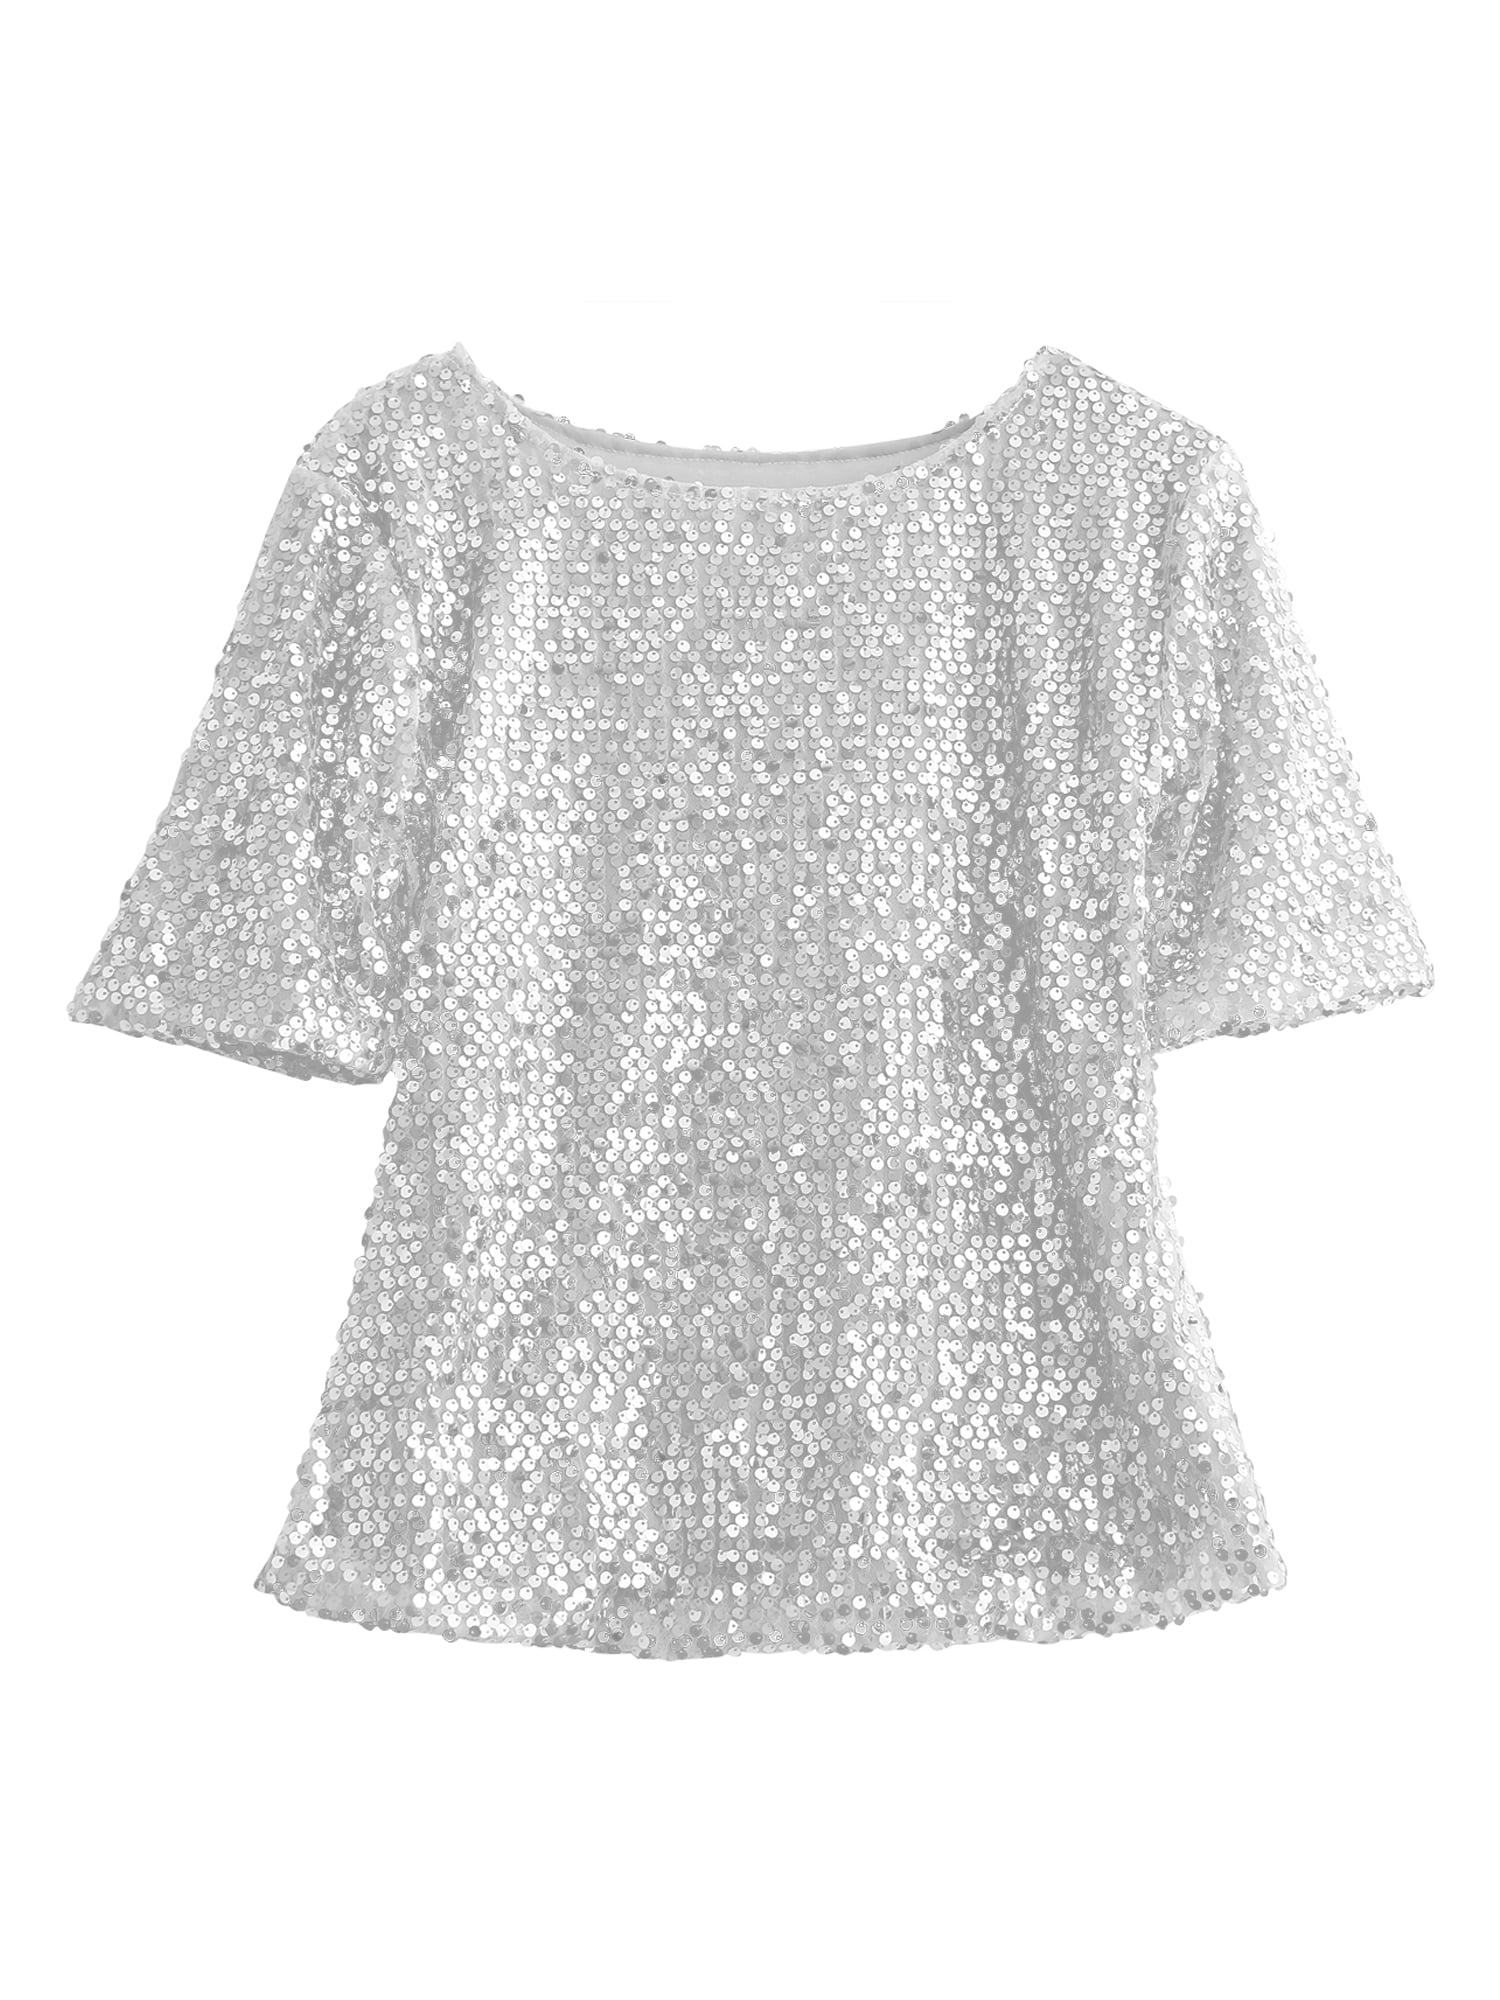 Women Sequin Sparkle Glitter Blouse Short Sleeve Top Shirt 